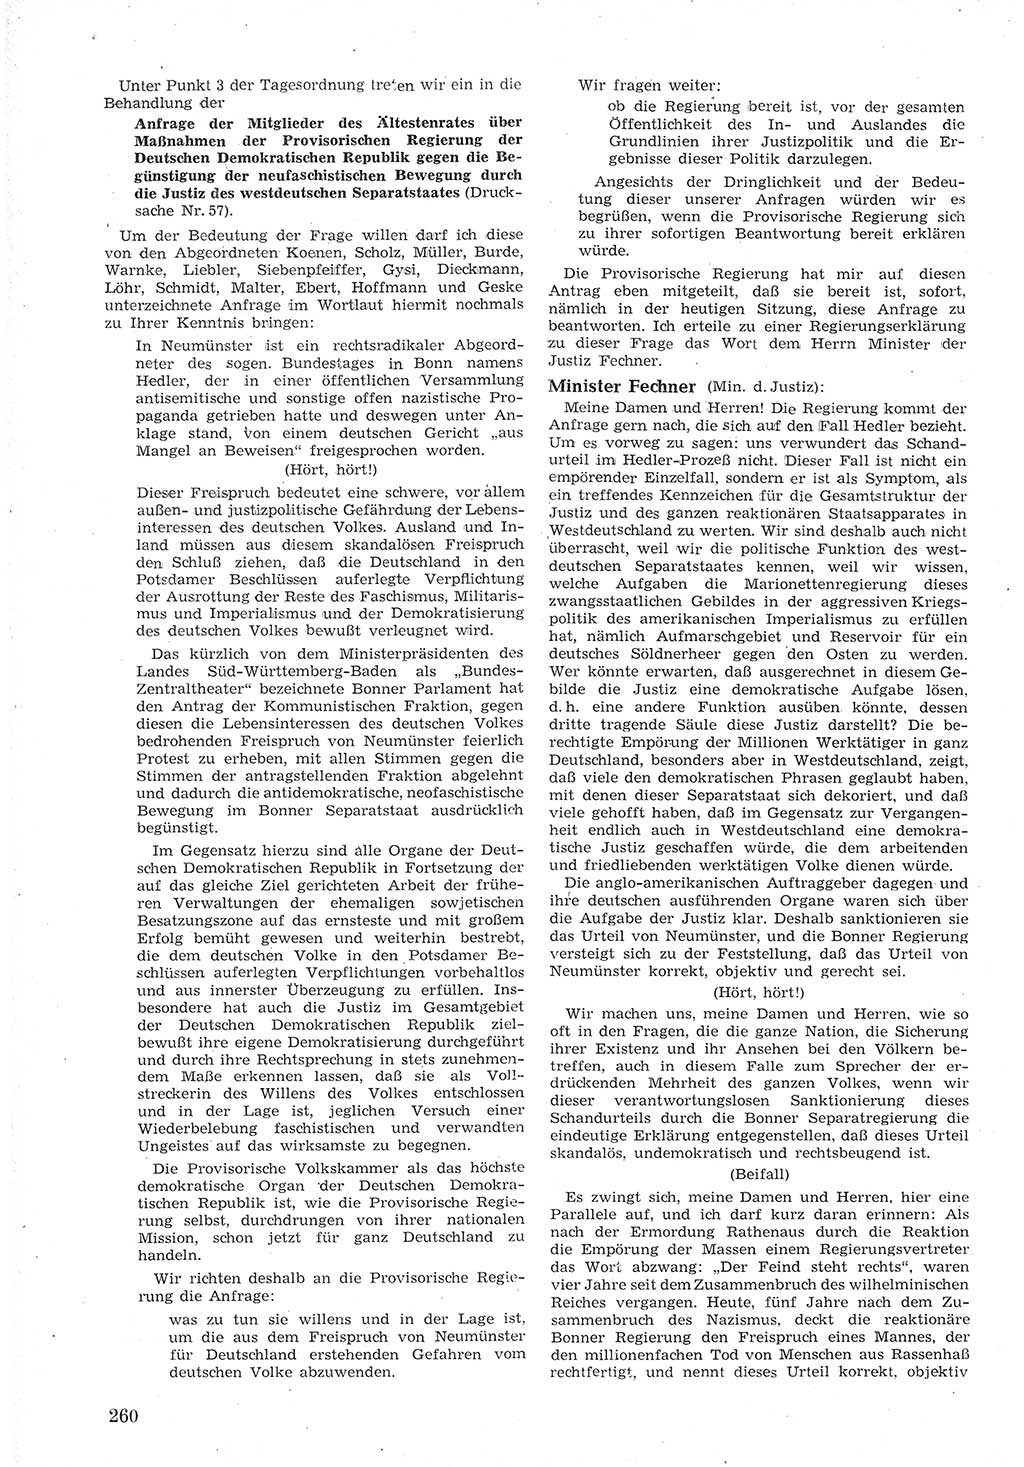 Provisorische Volkskammer (VK) der Deutschen Demokratischen Republik (DDR) 1949-1950, Dokument 274 (Prov. VK DDR 1949-1950, Dok. 274)